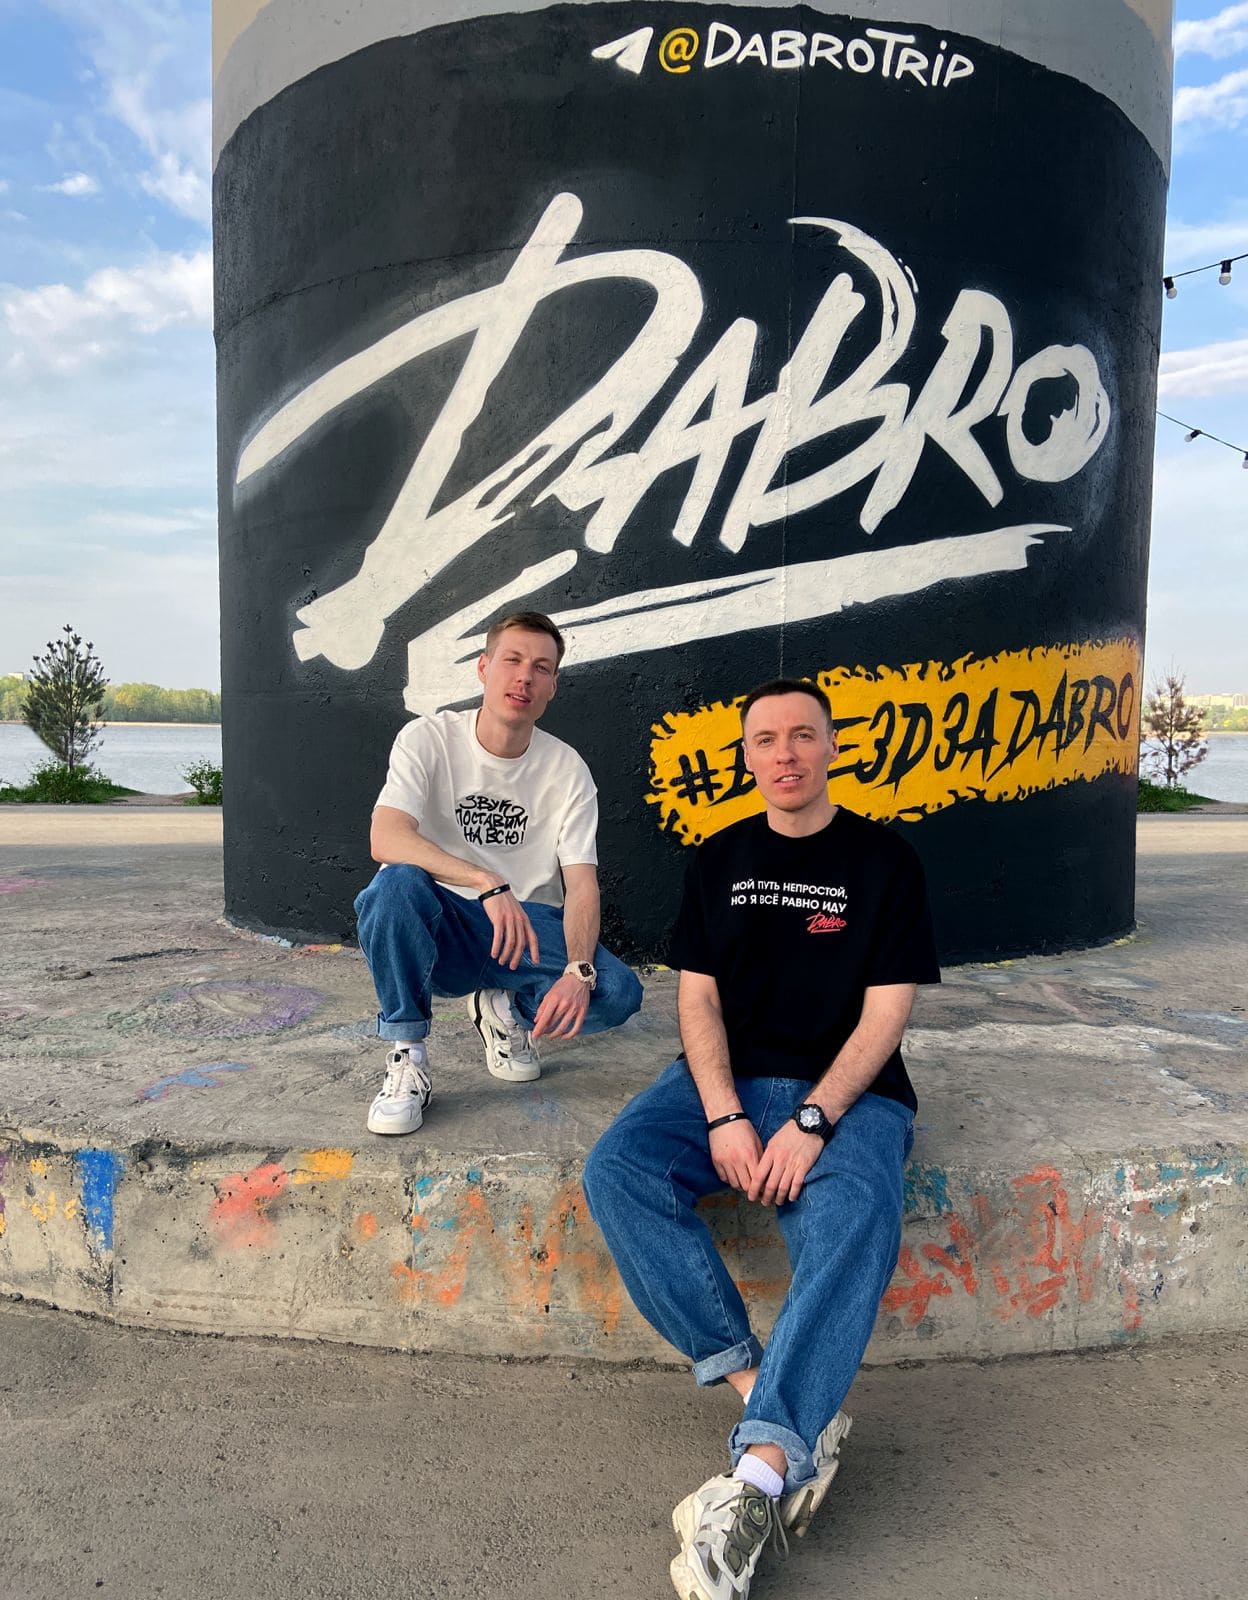 граффити группы Dabro